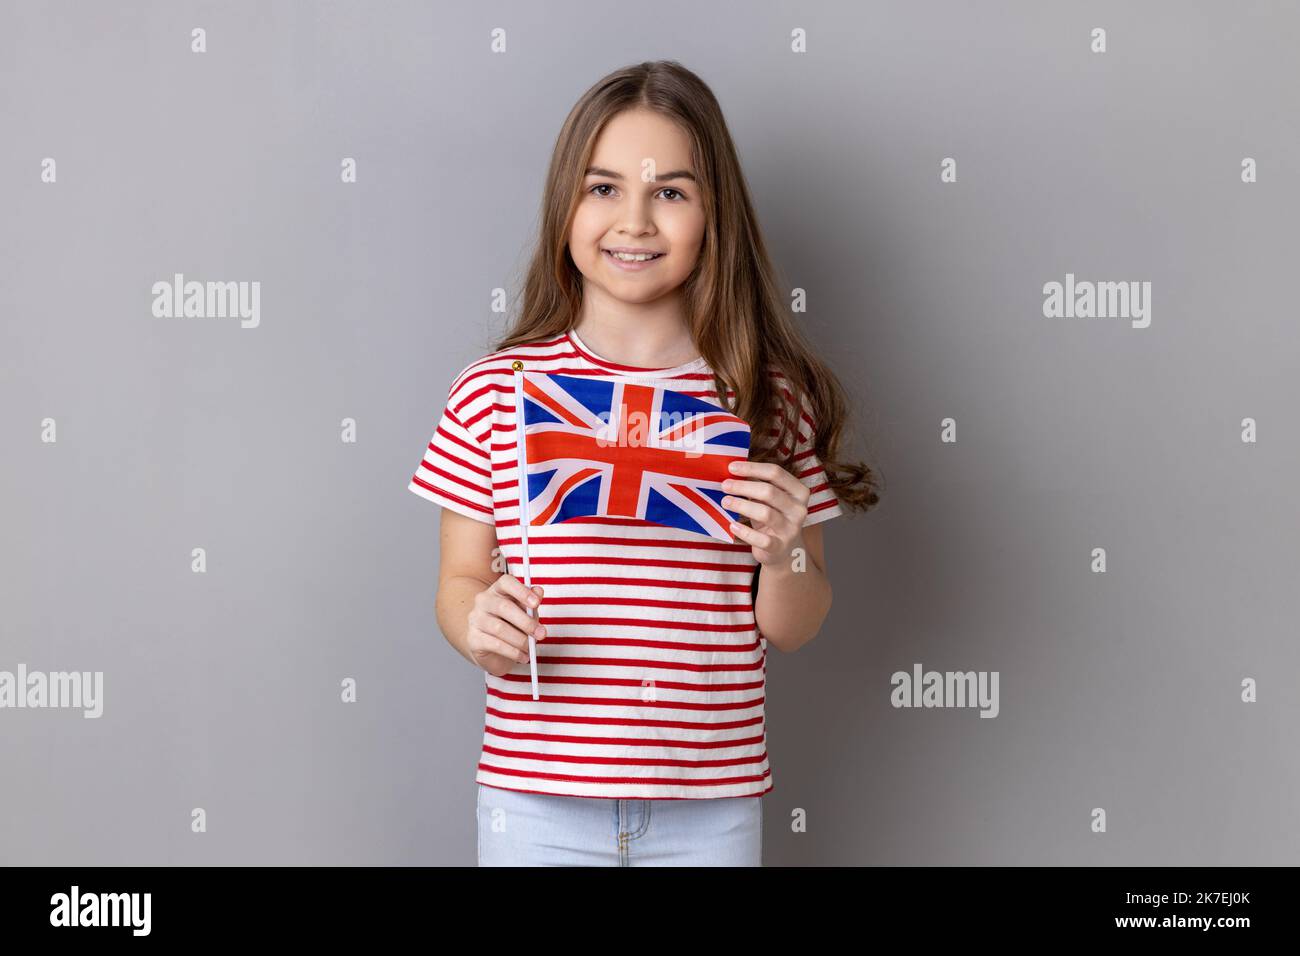 Britische Flagge. Porträt eines charmanten lächelnden kleinen Mädchens in gestreiftem T-Shirt mit Flagge des Vereinigten Königreichs, das die Kamera mit positivem Ausdruck betrachtet. Innenaufnahme des Studios isoliert auf grauem Hintergrund Stockfoto